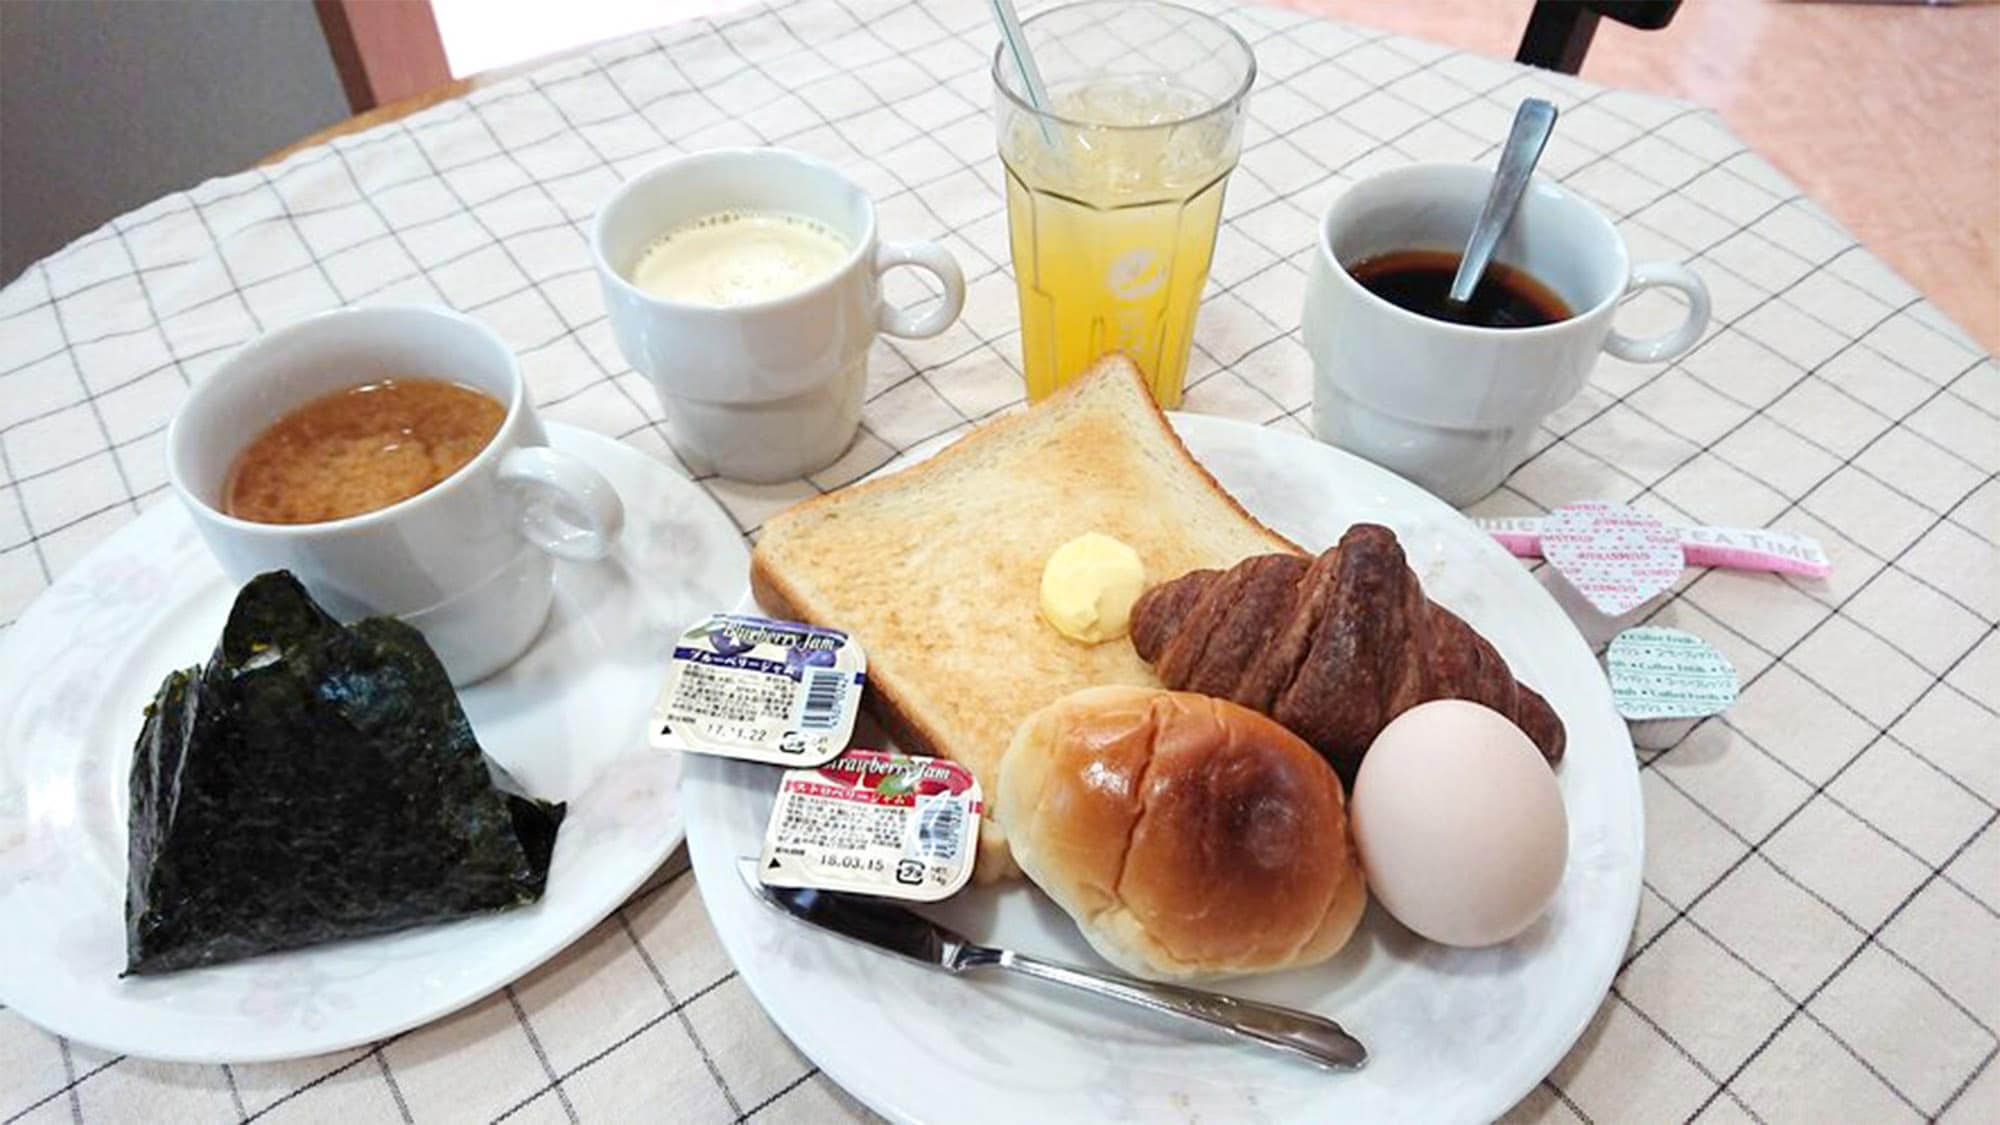 ・ Breakfast is included in all plans! Please enjoy it freely.